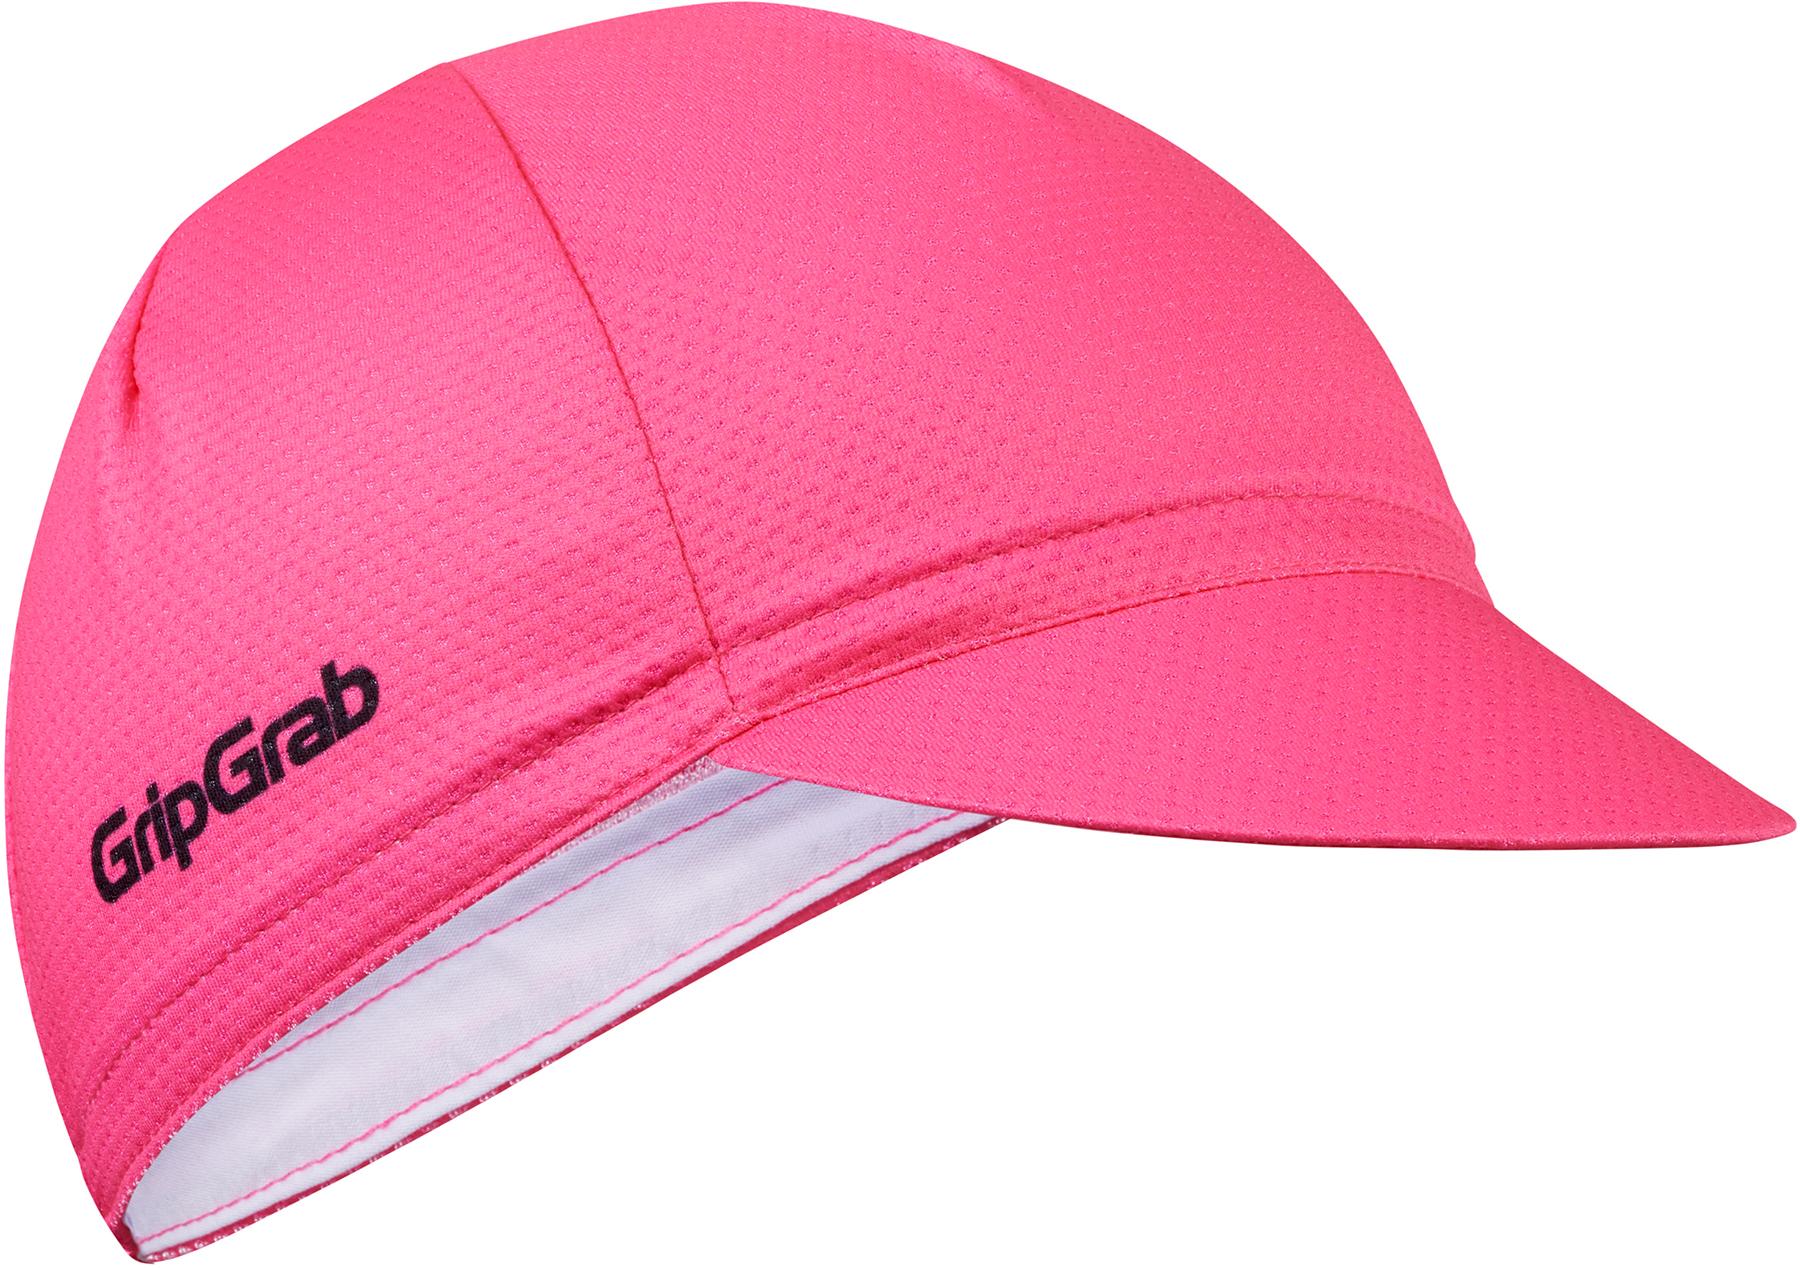 Gripgrab Lightweight Summer Cycling Cap - Pink